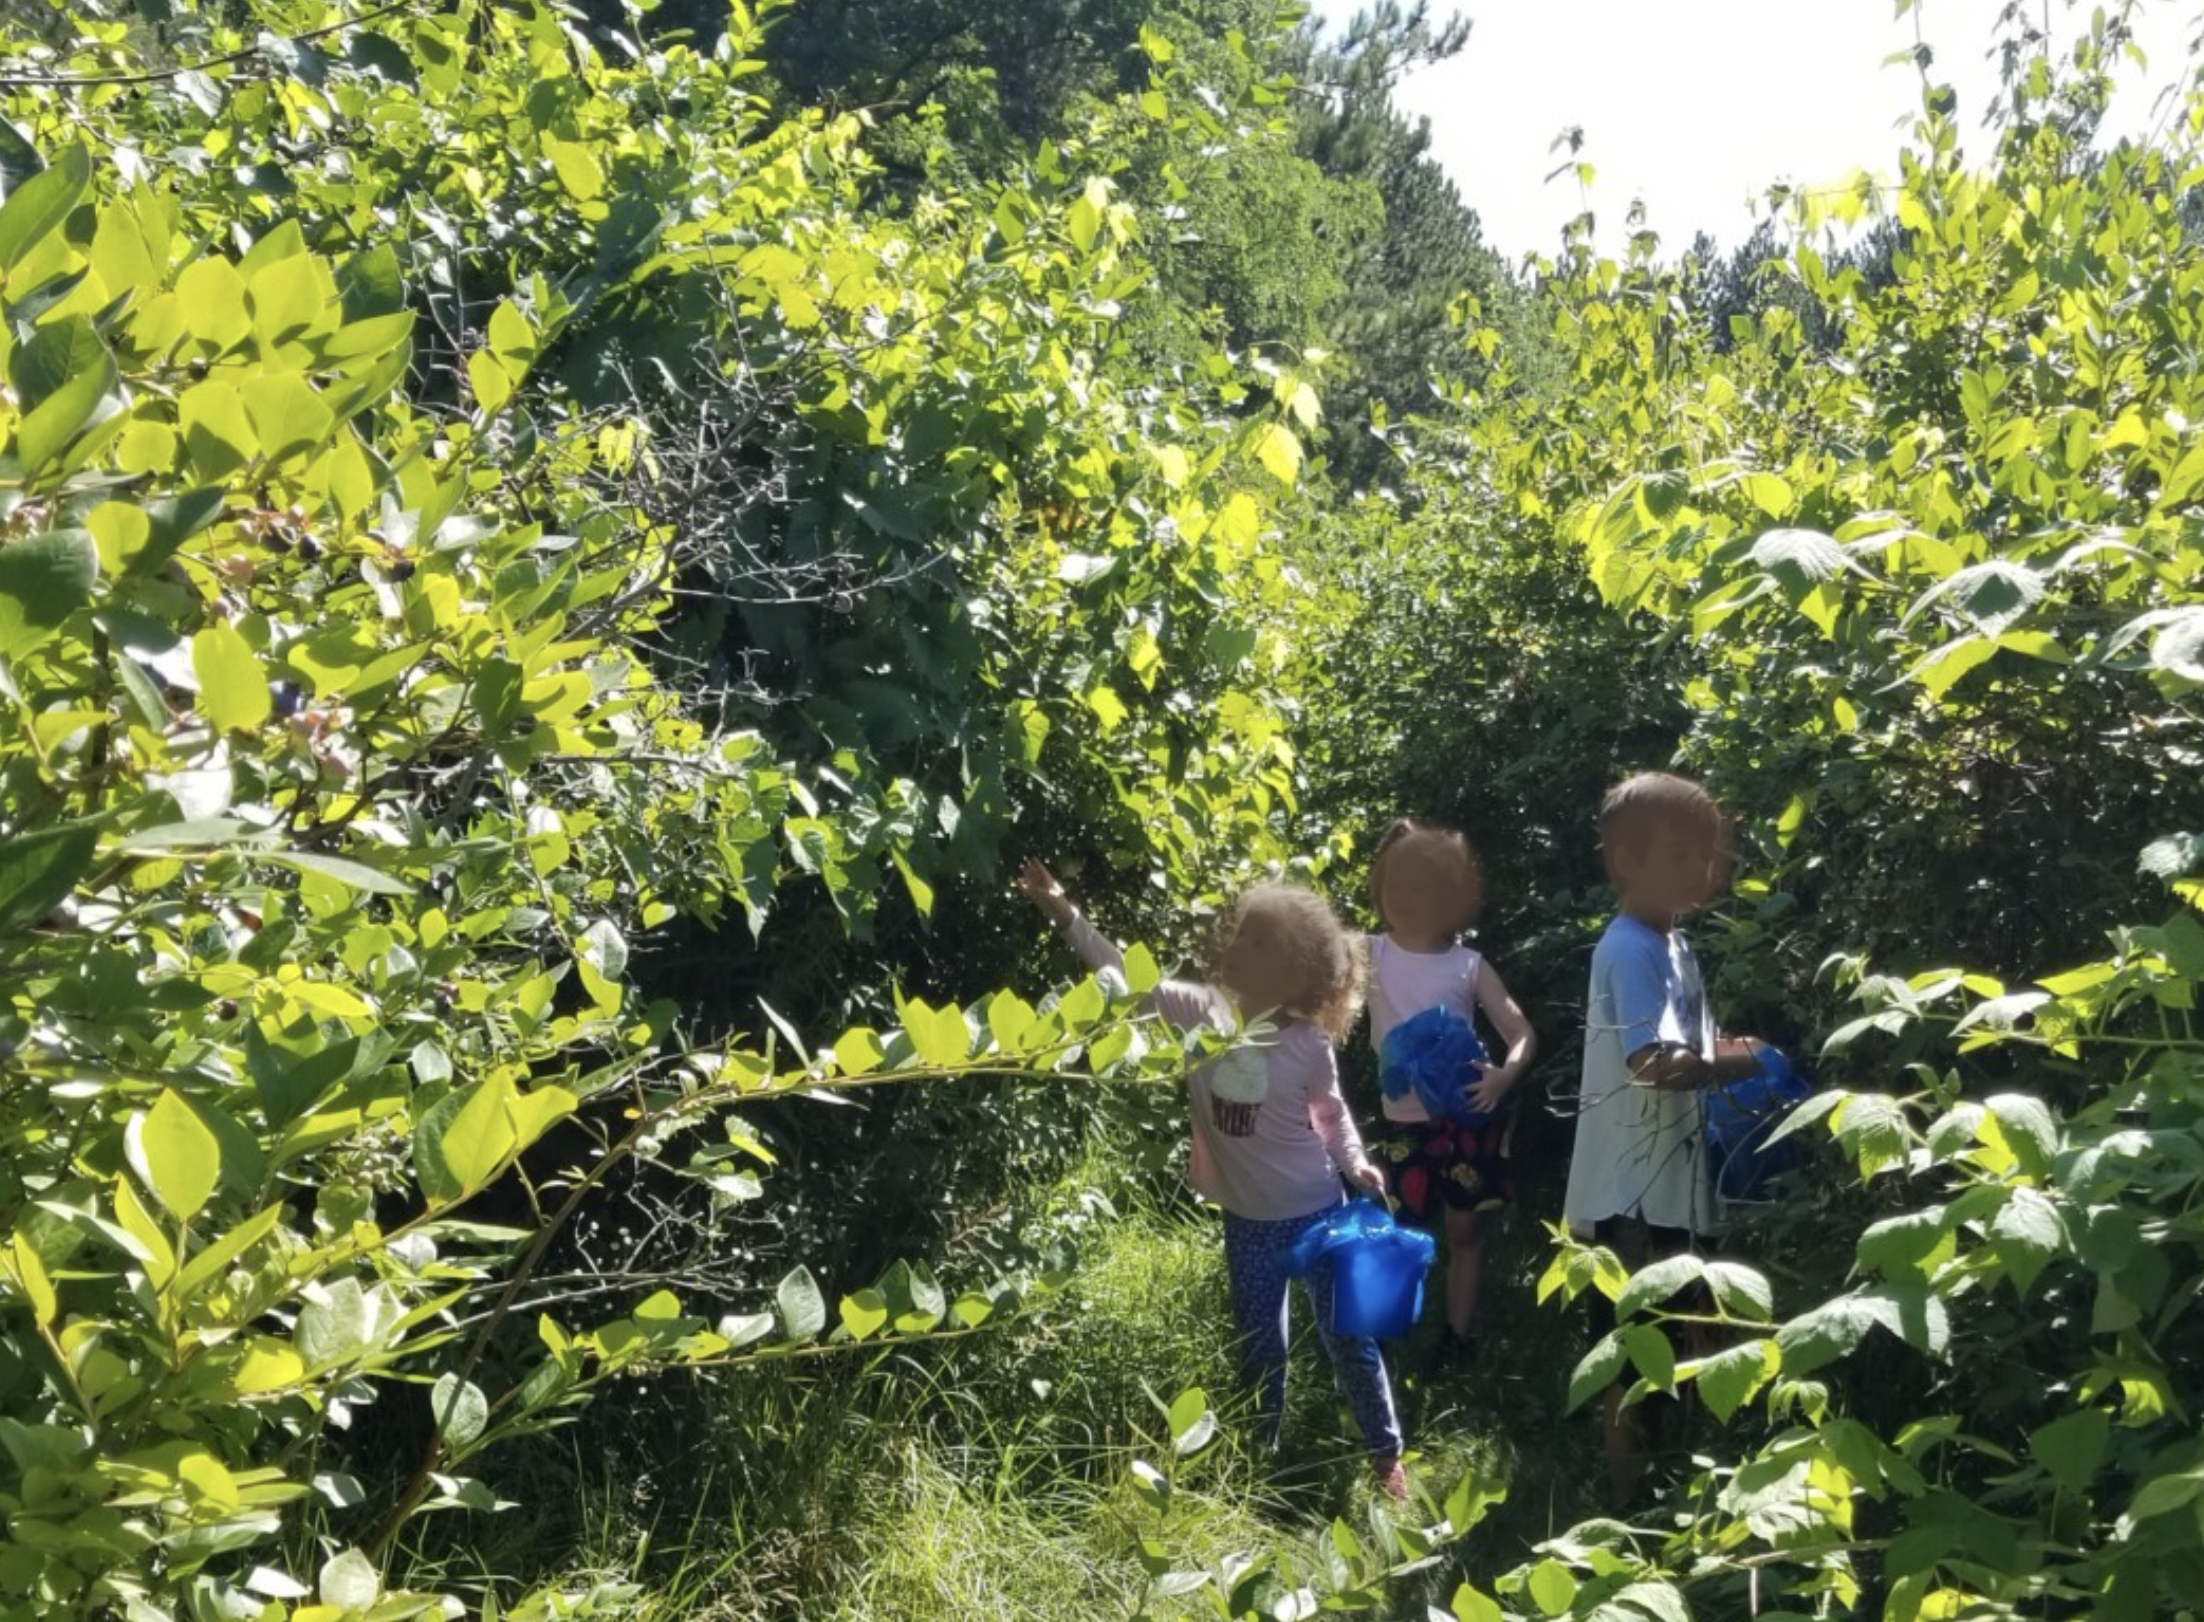 Children picking blueberries in a garden